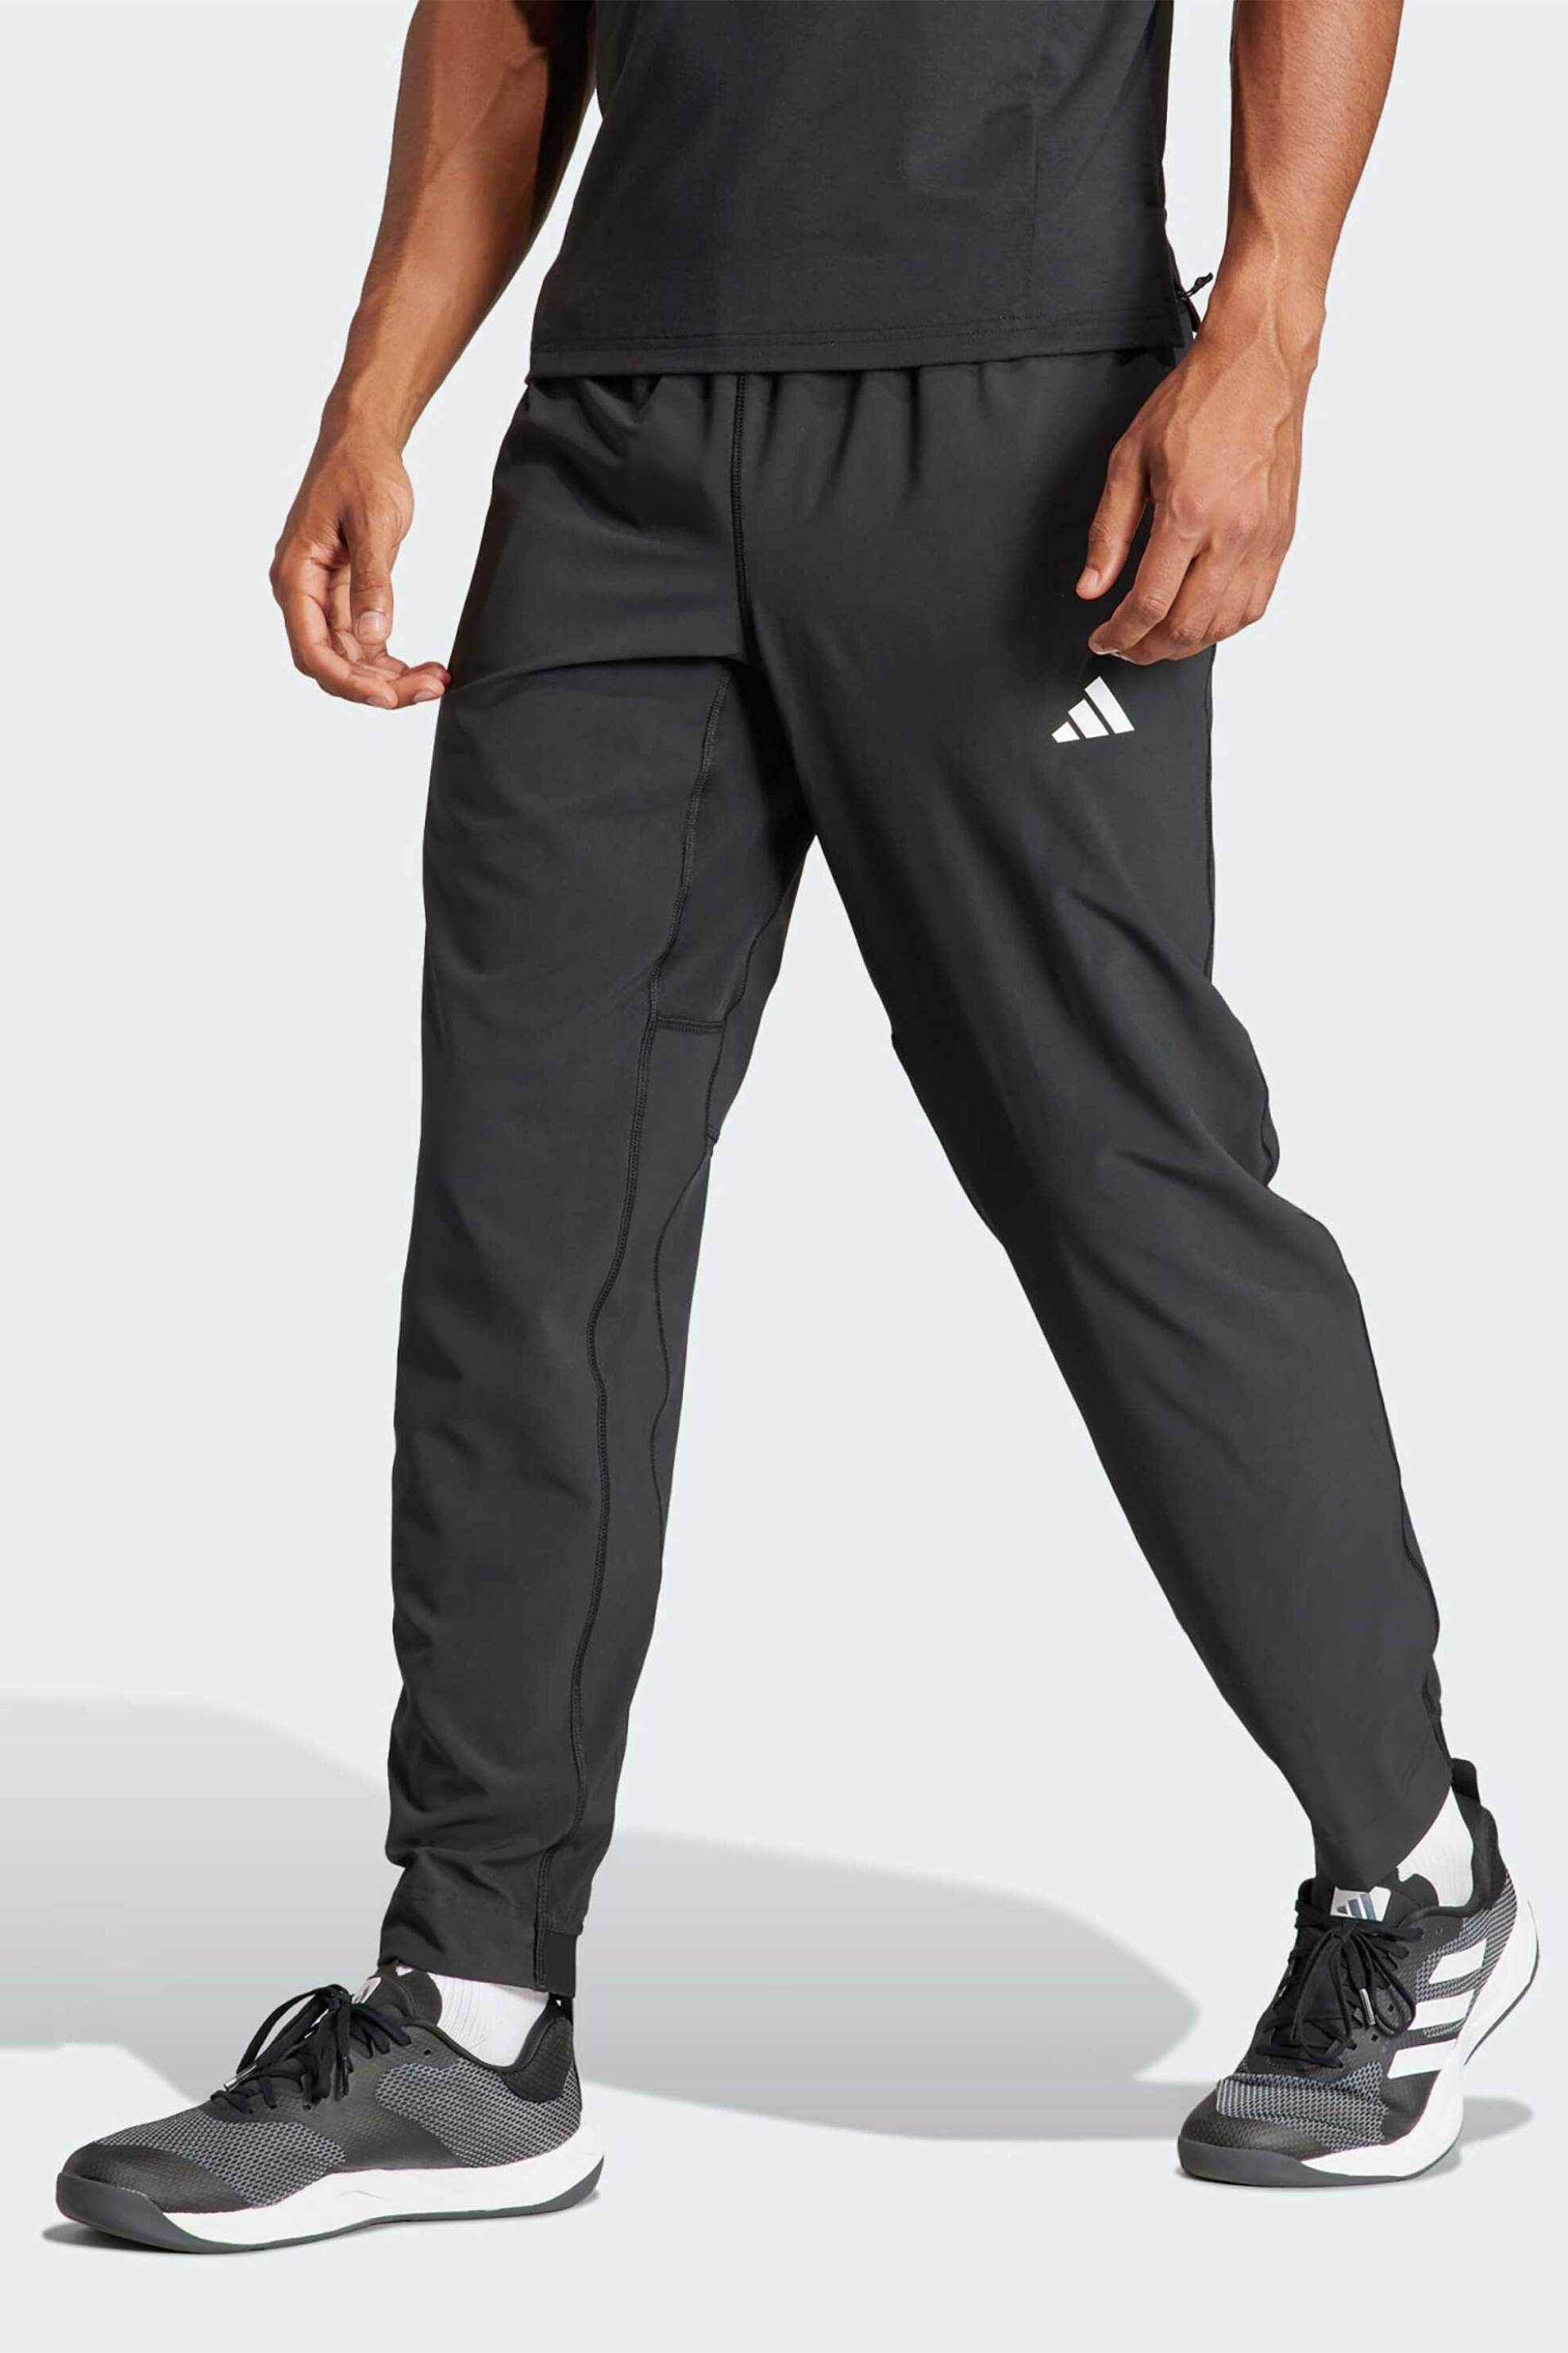 Ανδρική Μόδα > Ανδρικά Αθλητικά > Ανδρικά Αθλητικά Ρούχα > Ανδρικά Αθλητικά Παντελόνια Φόρμας Adidas ανδρικό παντελόνι φόρμας Regular Fit "Train Essentials" - IT5457 Μαύρο